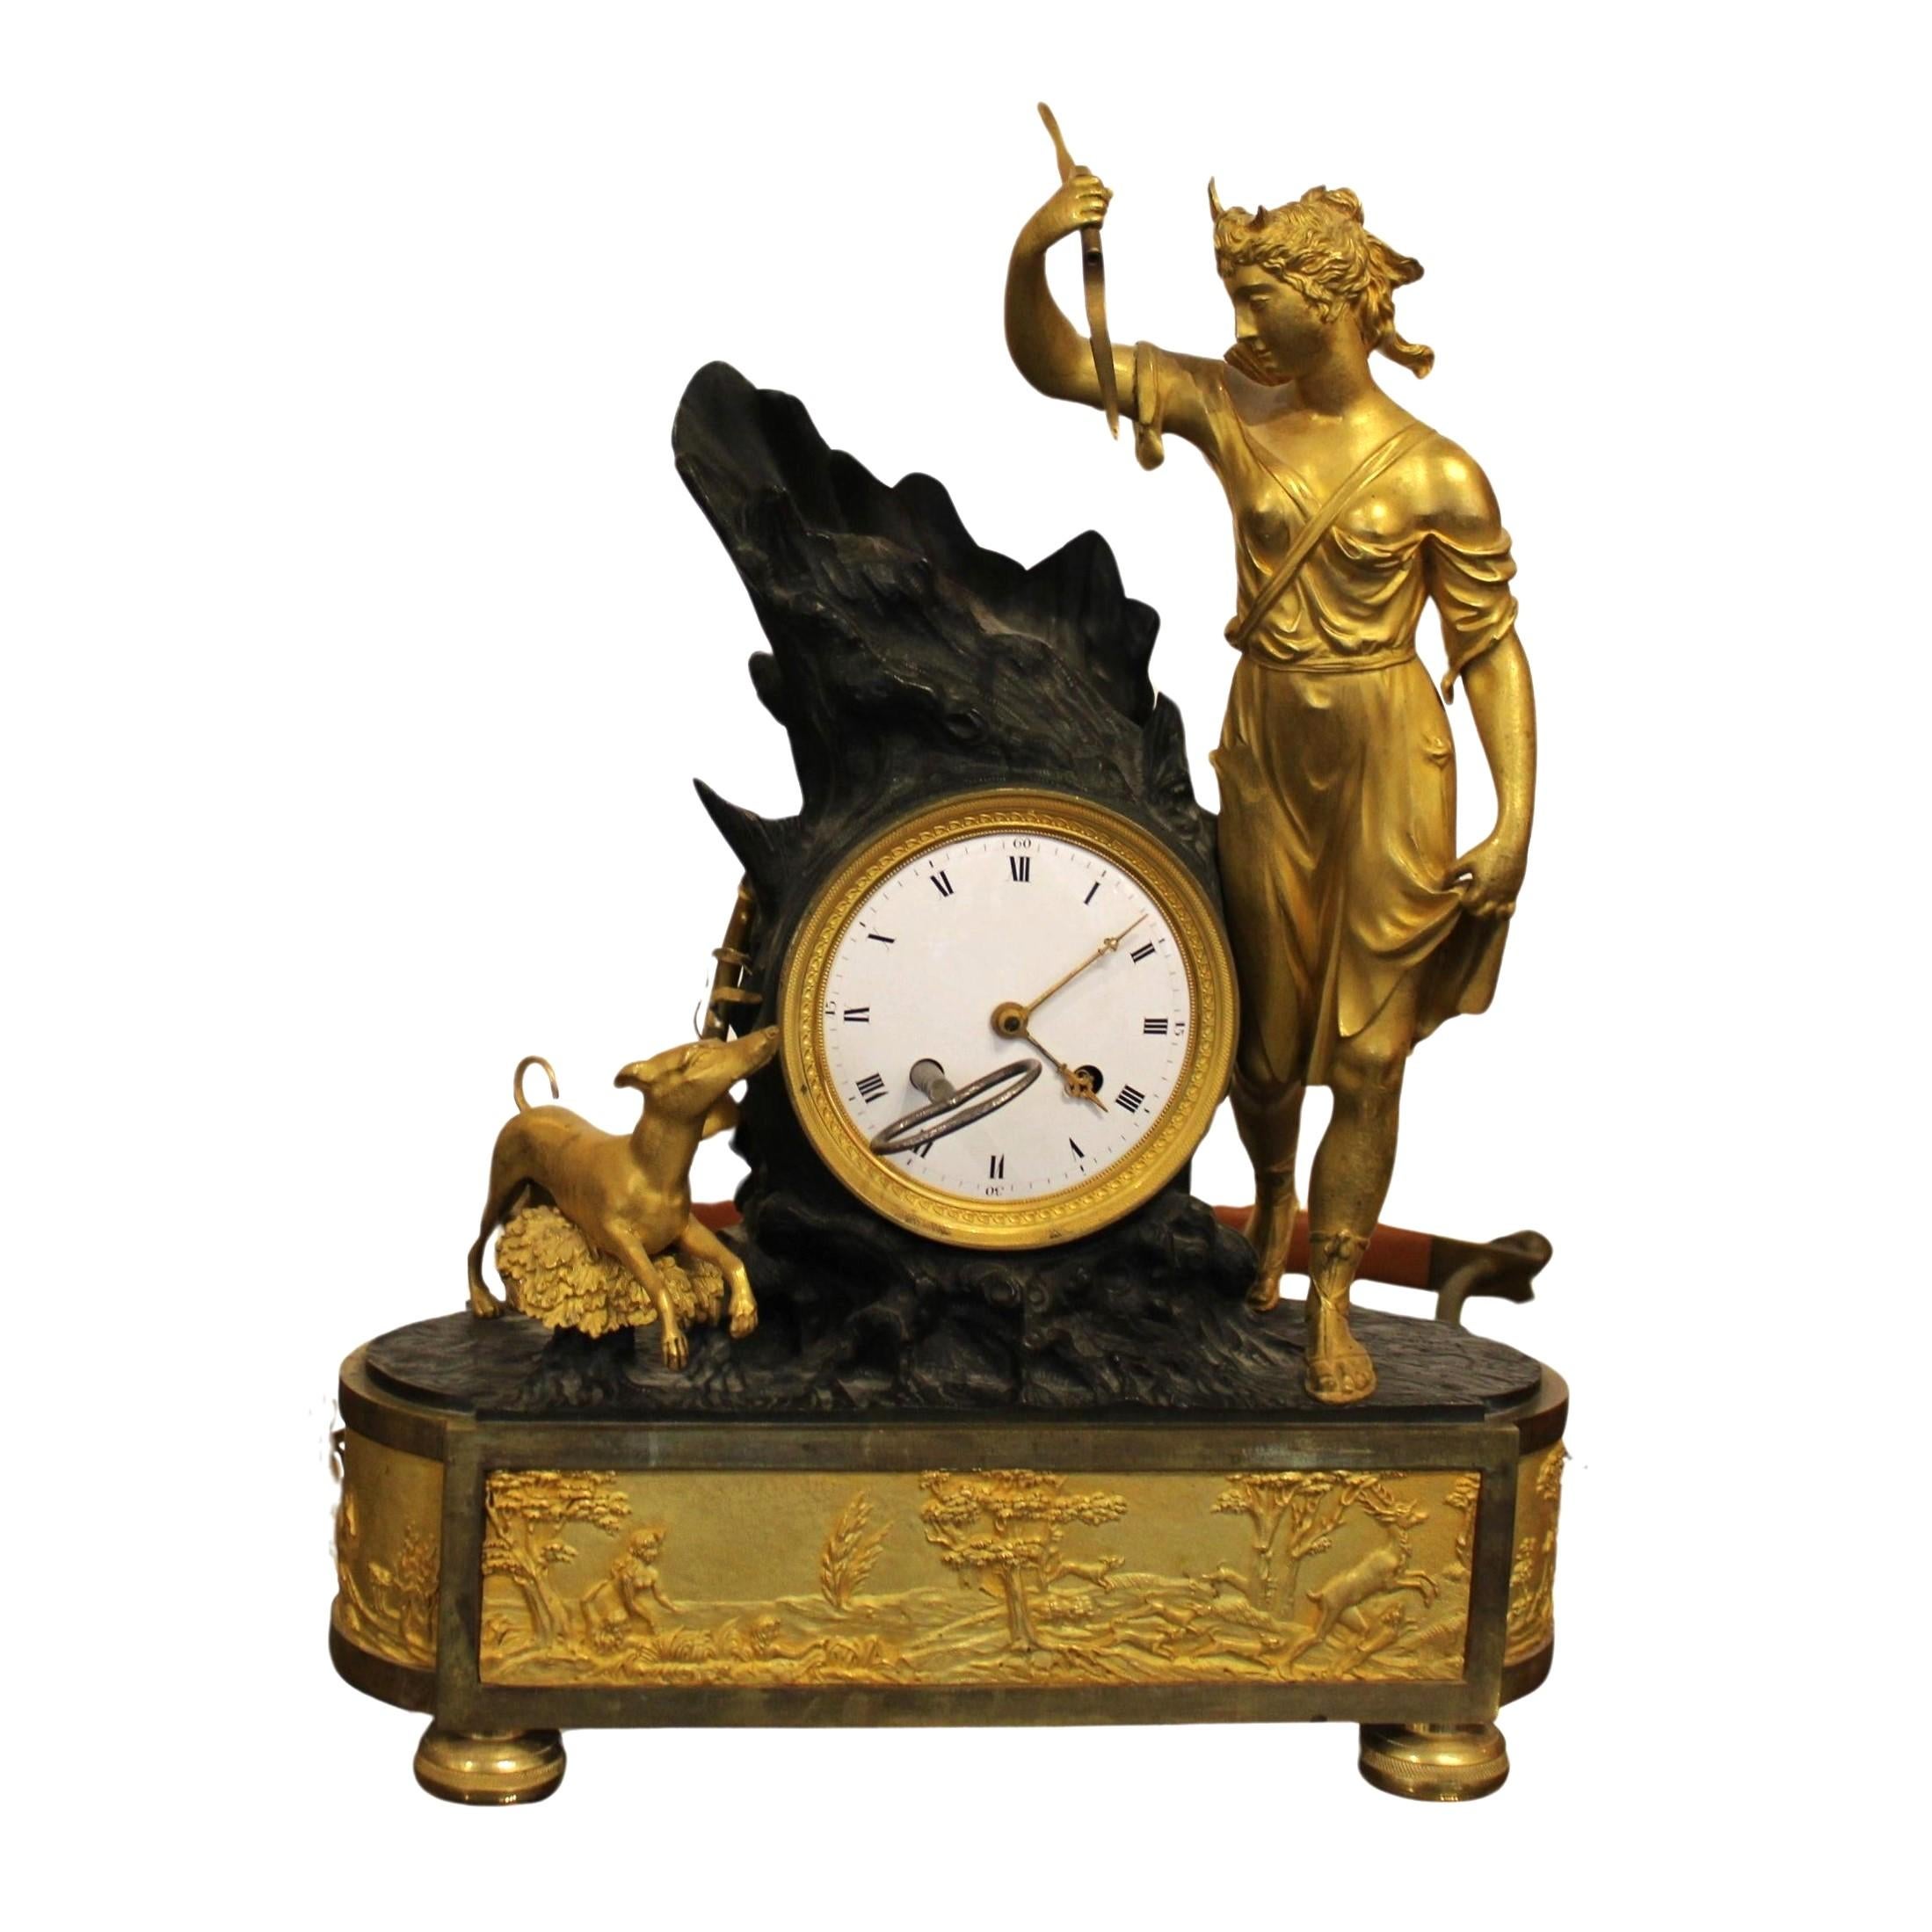 Pendule en bronze doré représentant Diane chasseresse
France, début du XIXe siècle